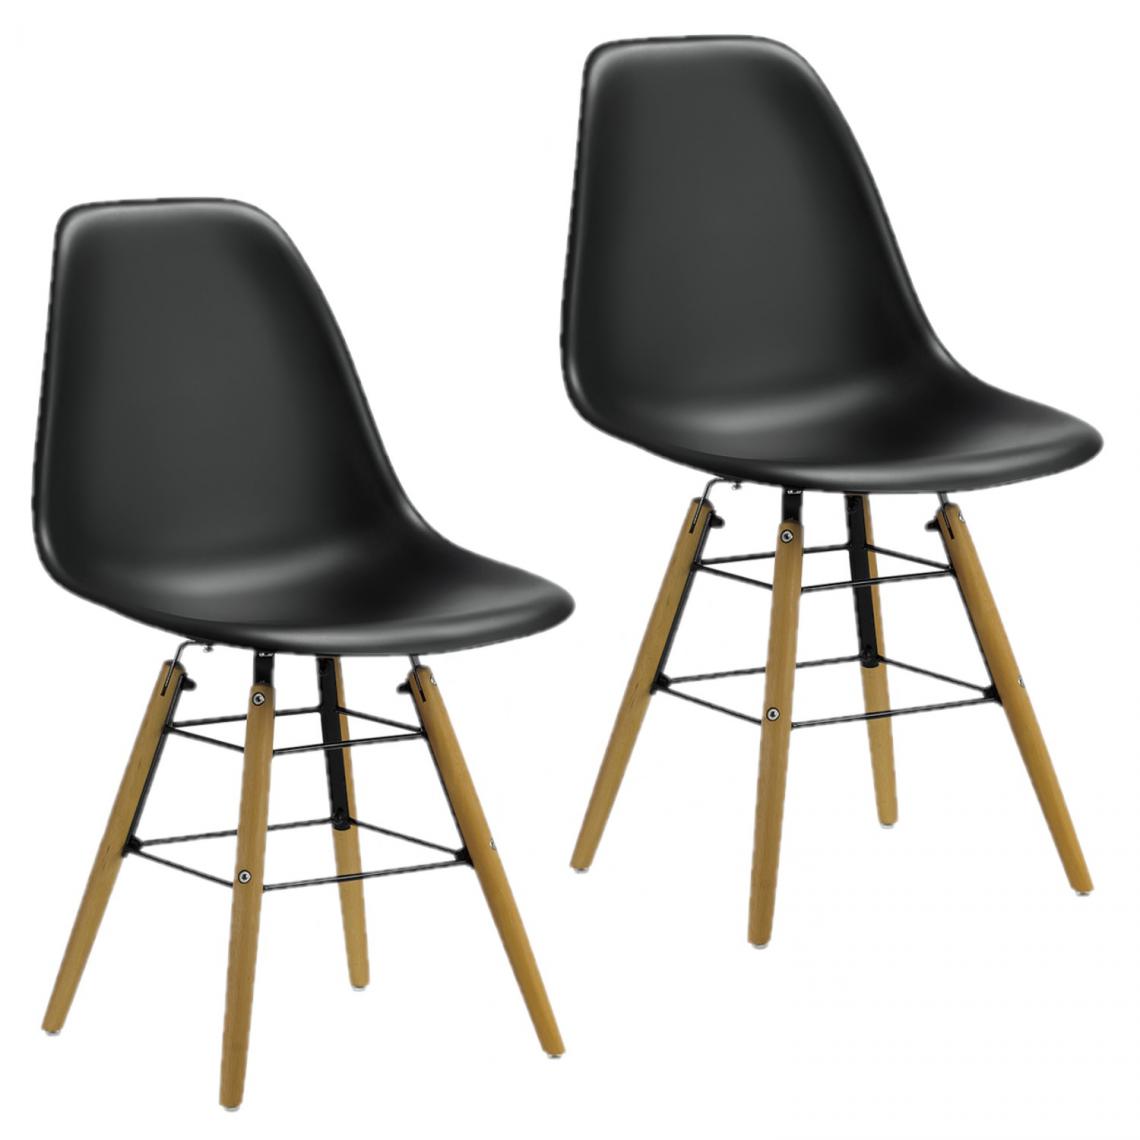 Toilinux - Lot de 2 chaises de table Liv avec pieds en bois de hêtre et châssis en métal - Hauteur d'assise 44 cm - Noir - Chaises